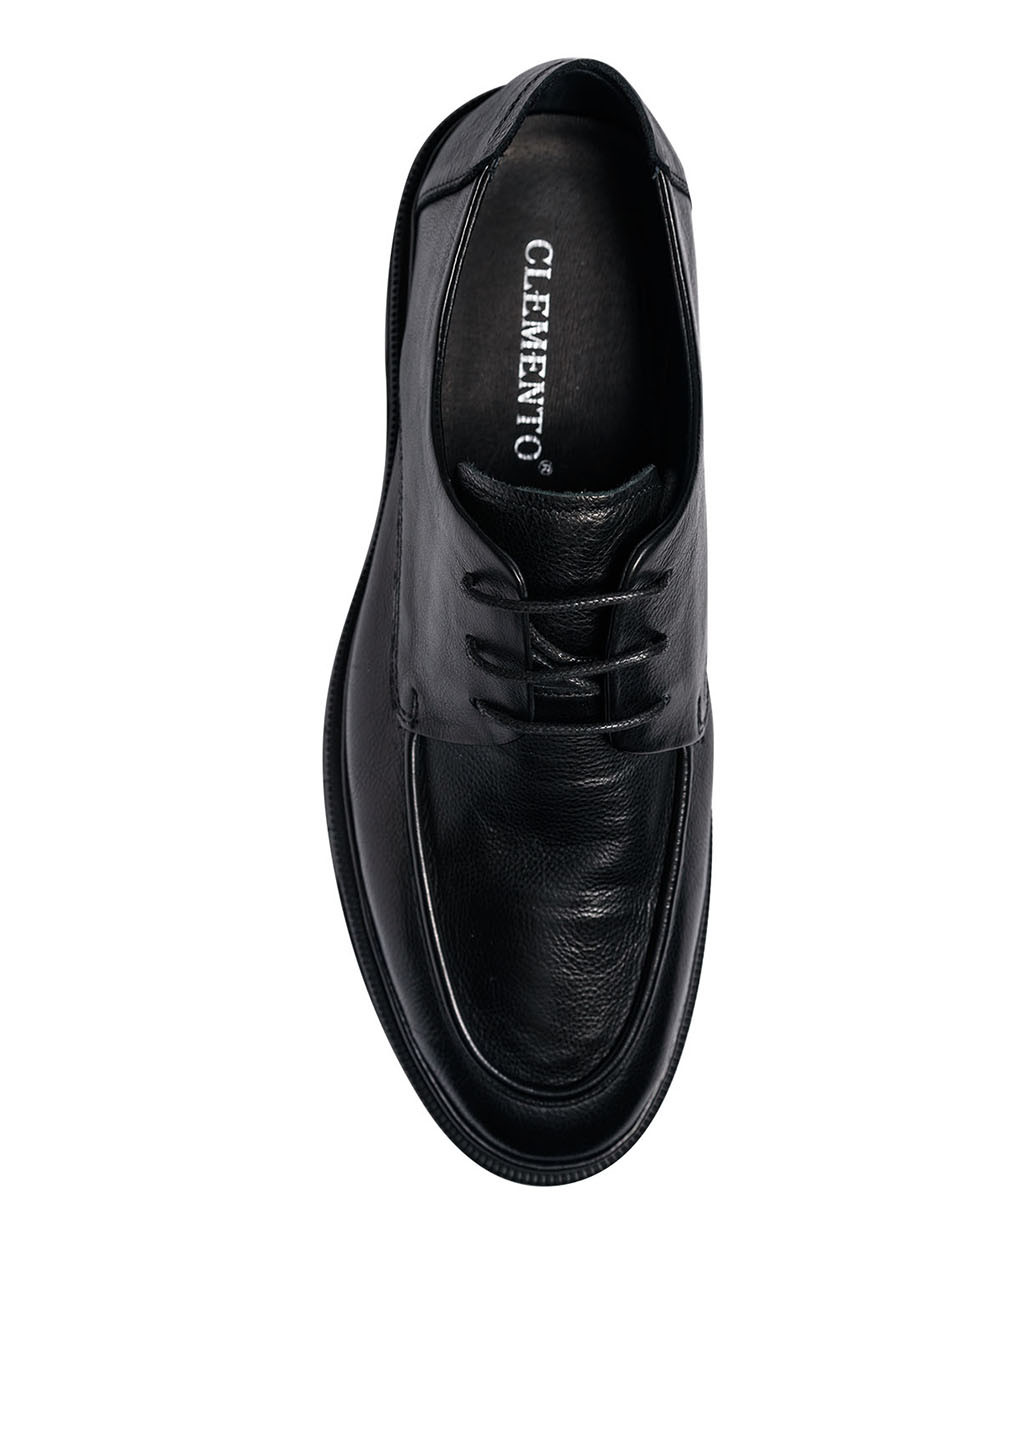 Черные классические туфли Clemento на шнурках